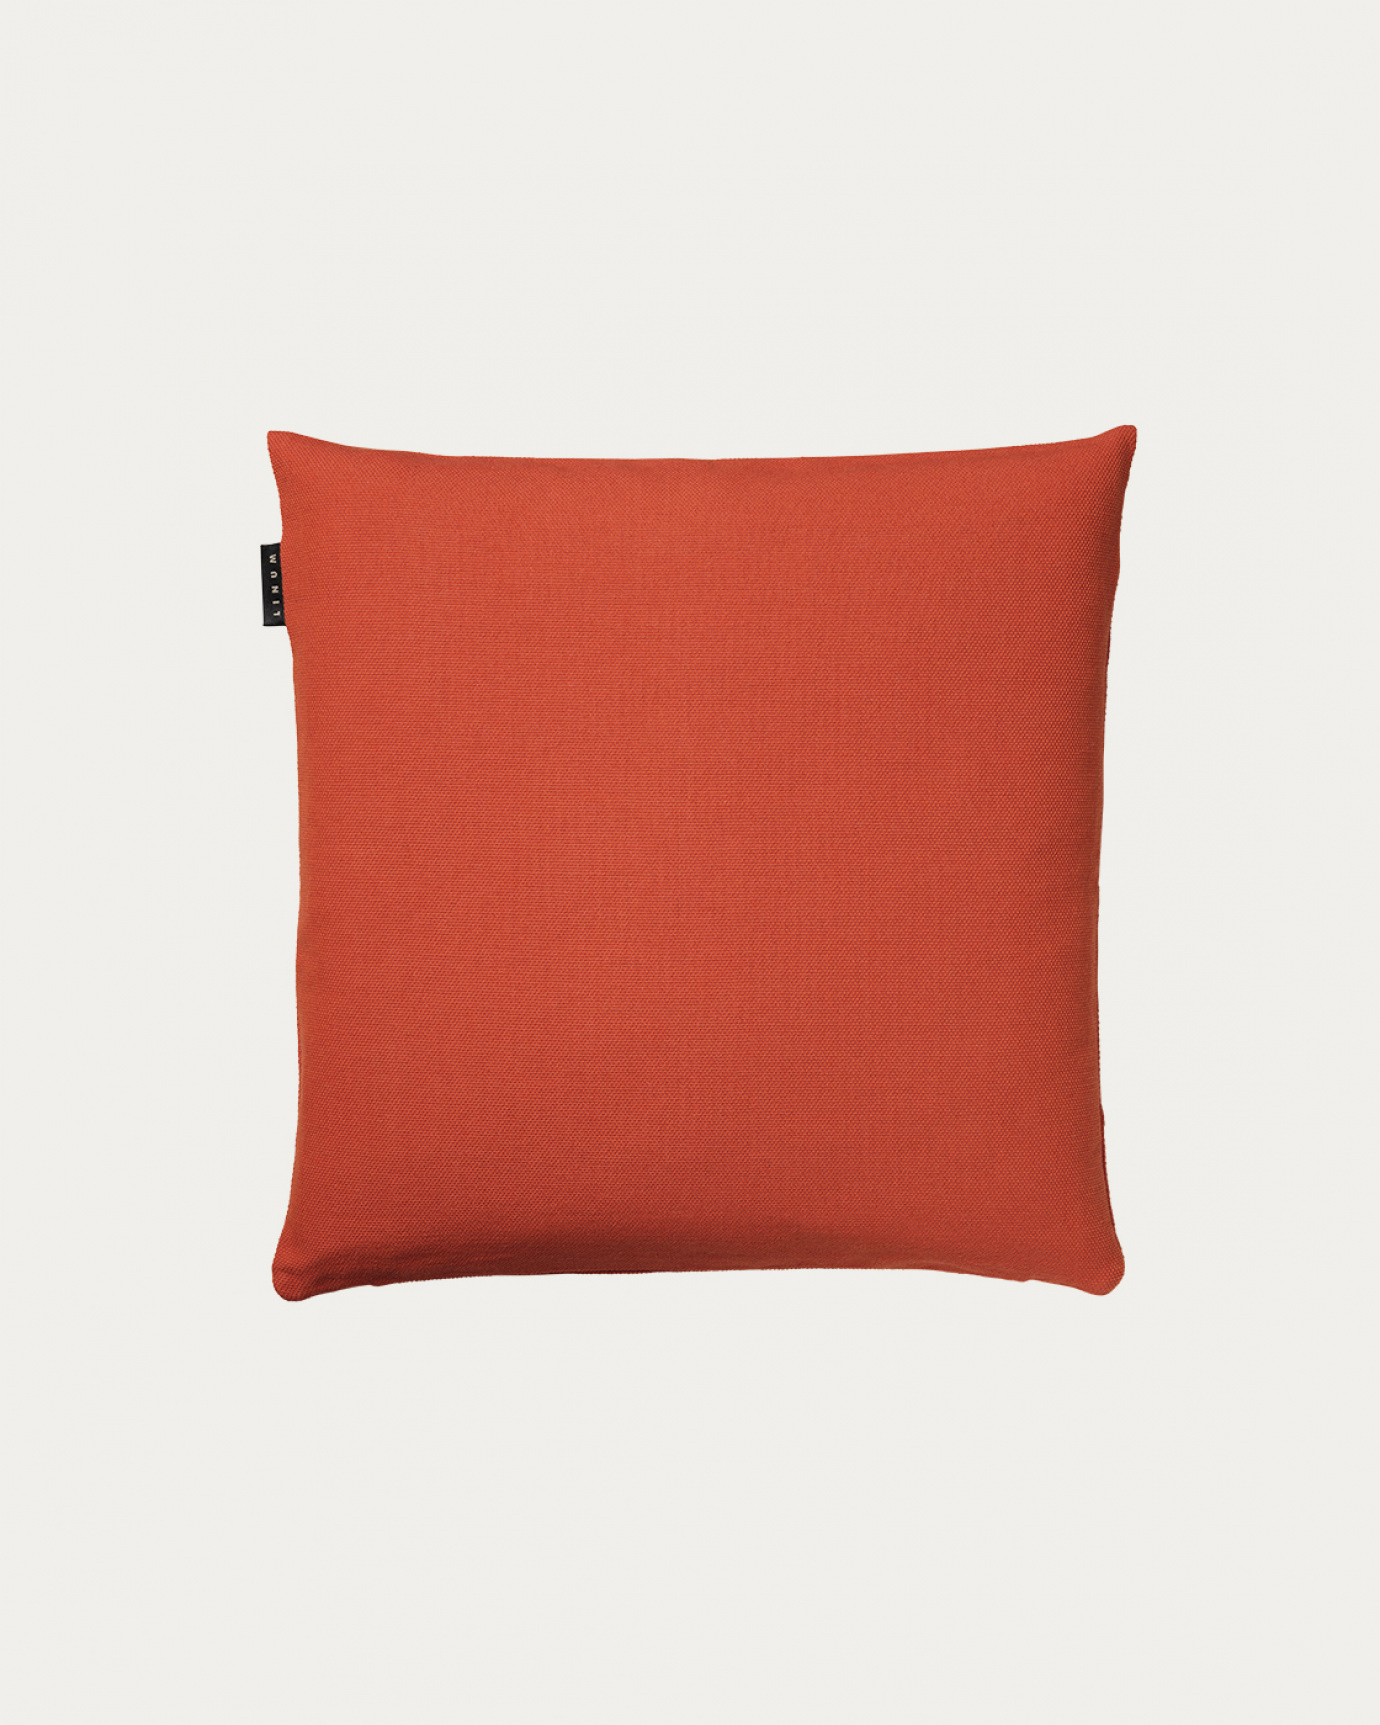 Produktbild rostorange PEPPER Kissenhülle aus weicher Baumwolle von LINUM DESIGN. Einfach zu waschen und langlebig für Generationen. Größe 40x40 cm.